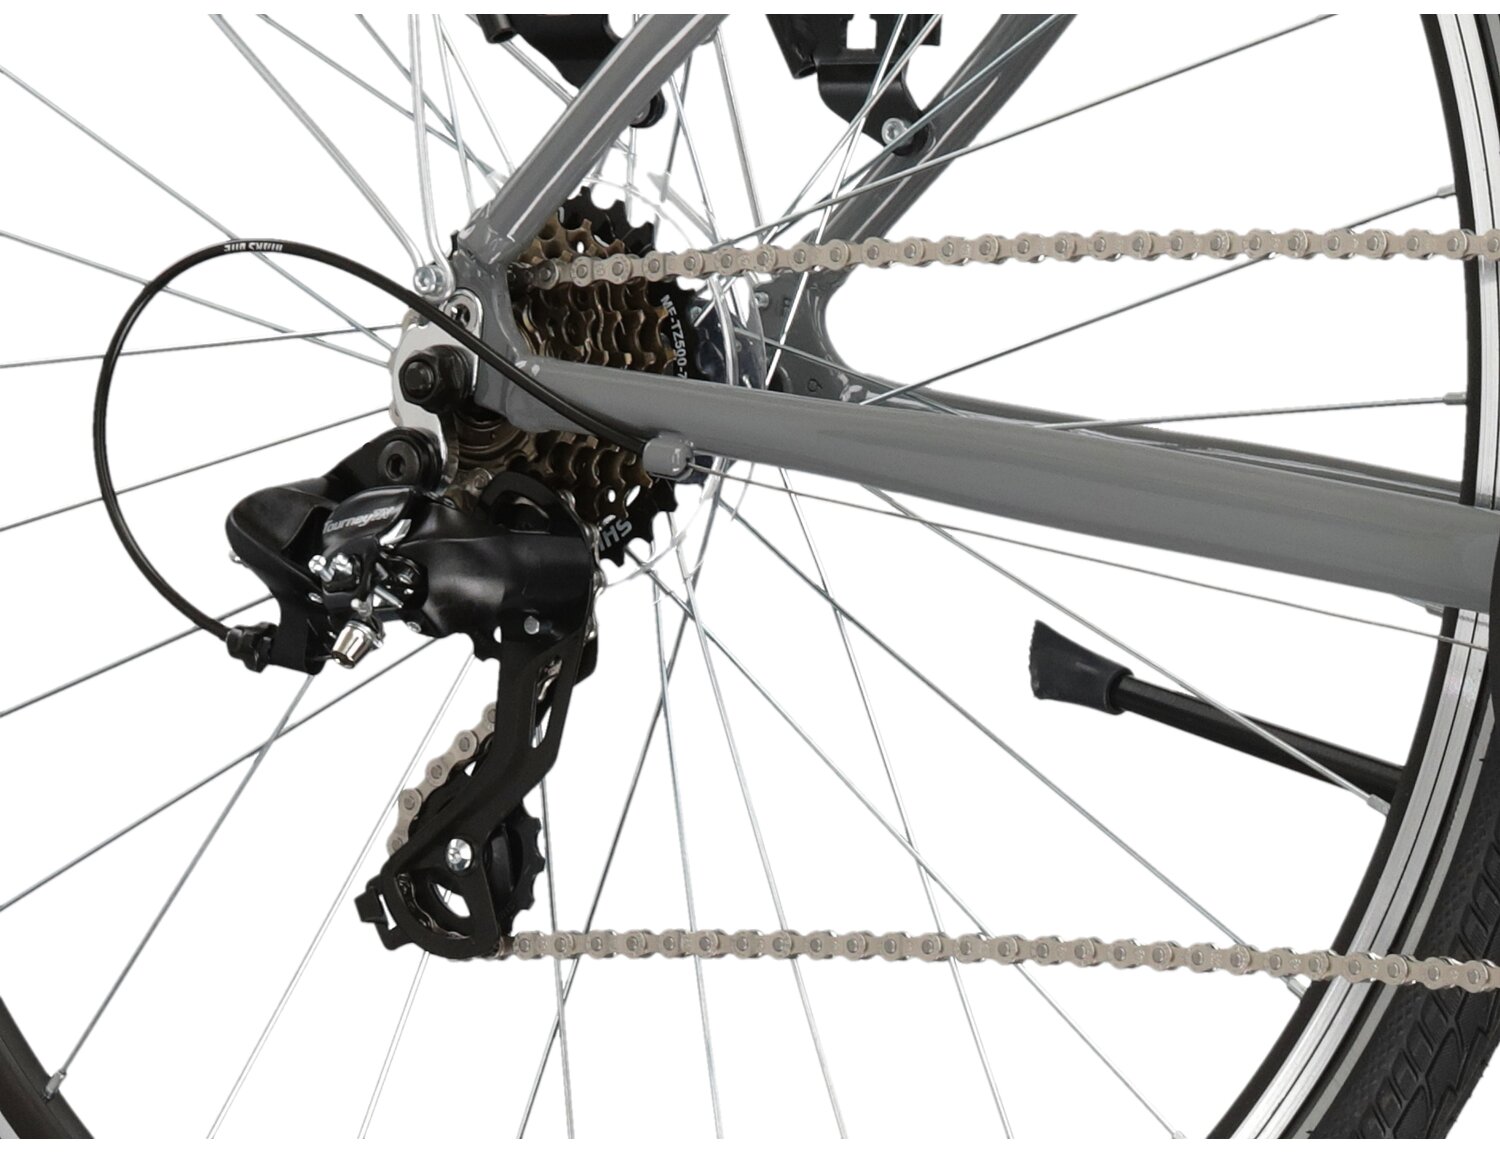  Tylna siedmiobiegowa przerzutka Shimano Tourney TY300 oraz hamulce v-brake w rowerze trekkingowym KROSS Trans 1.0 